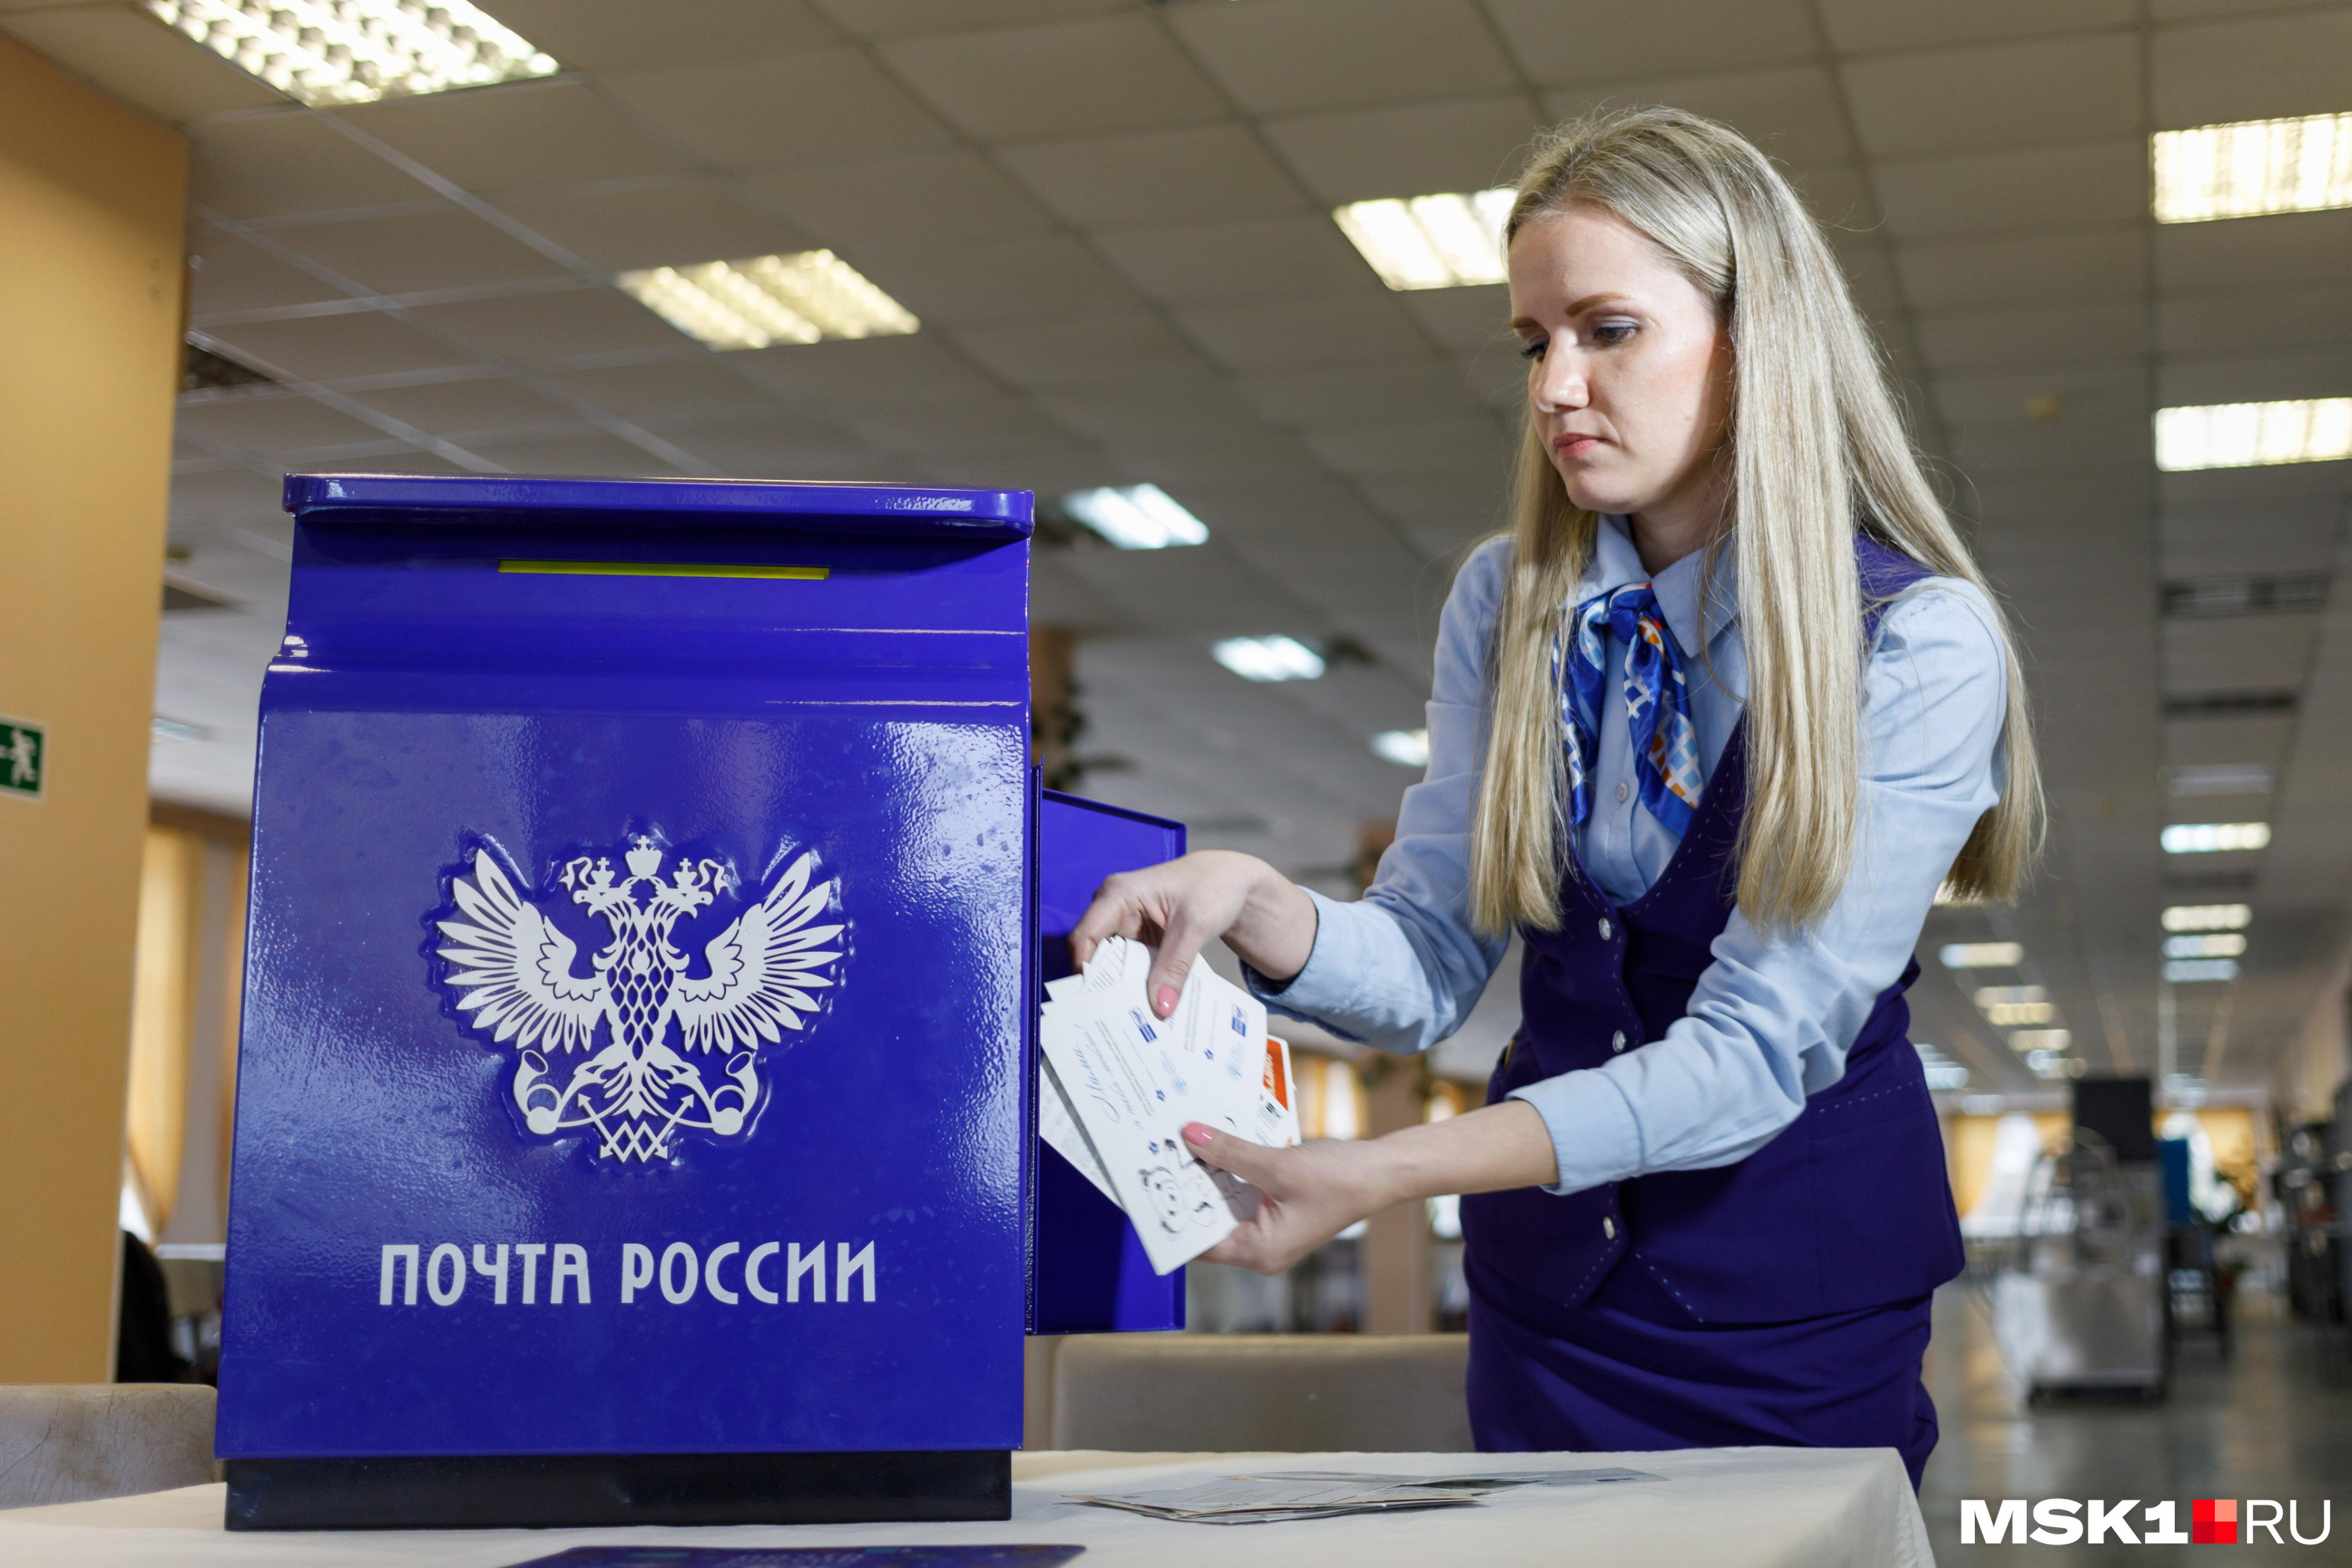 «Почта России» запустила новый сервис, где можно заказывать товары из-за границы